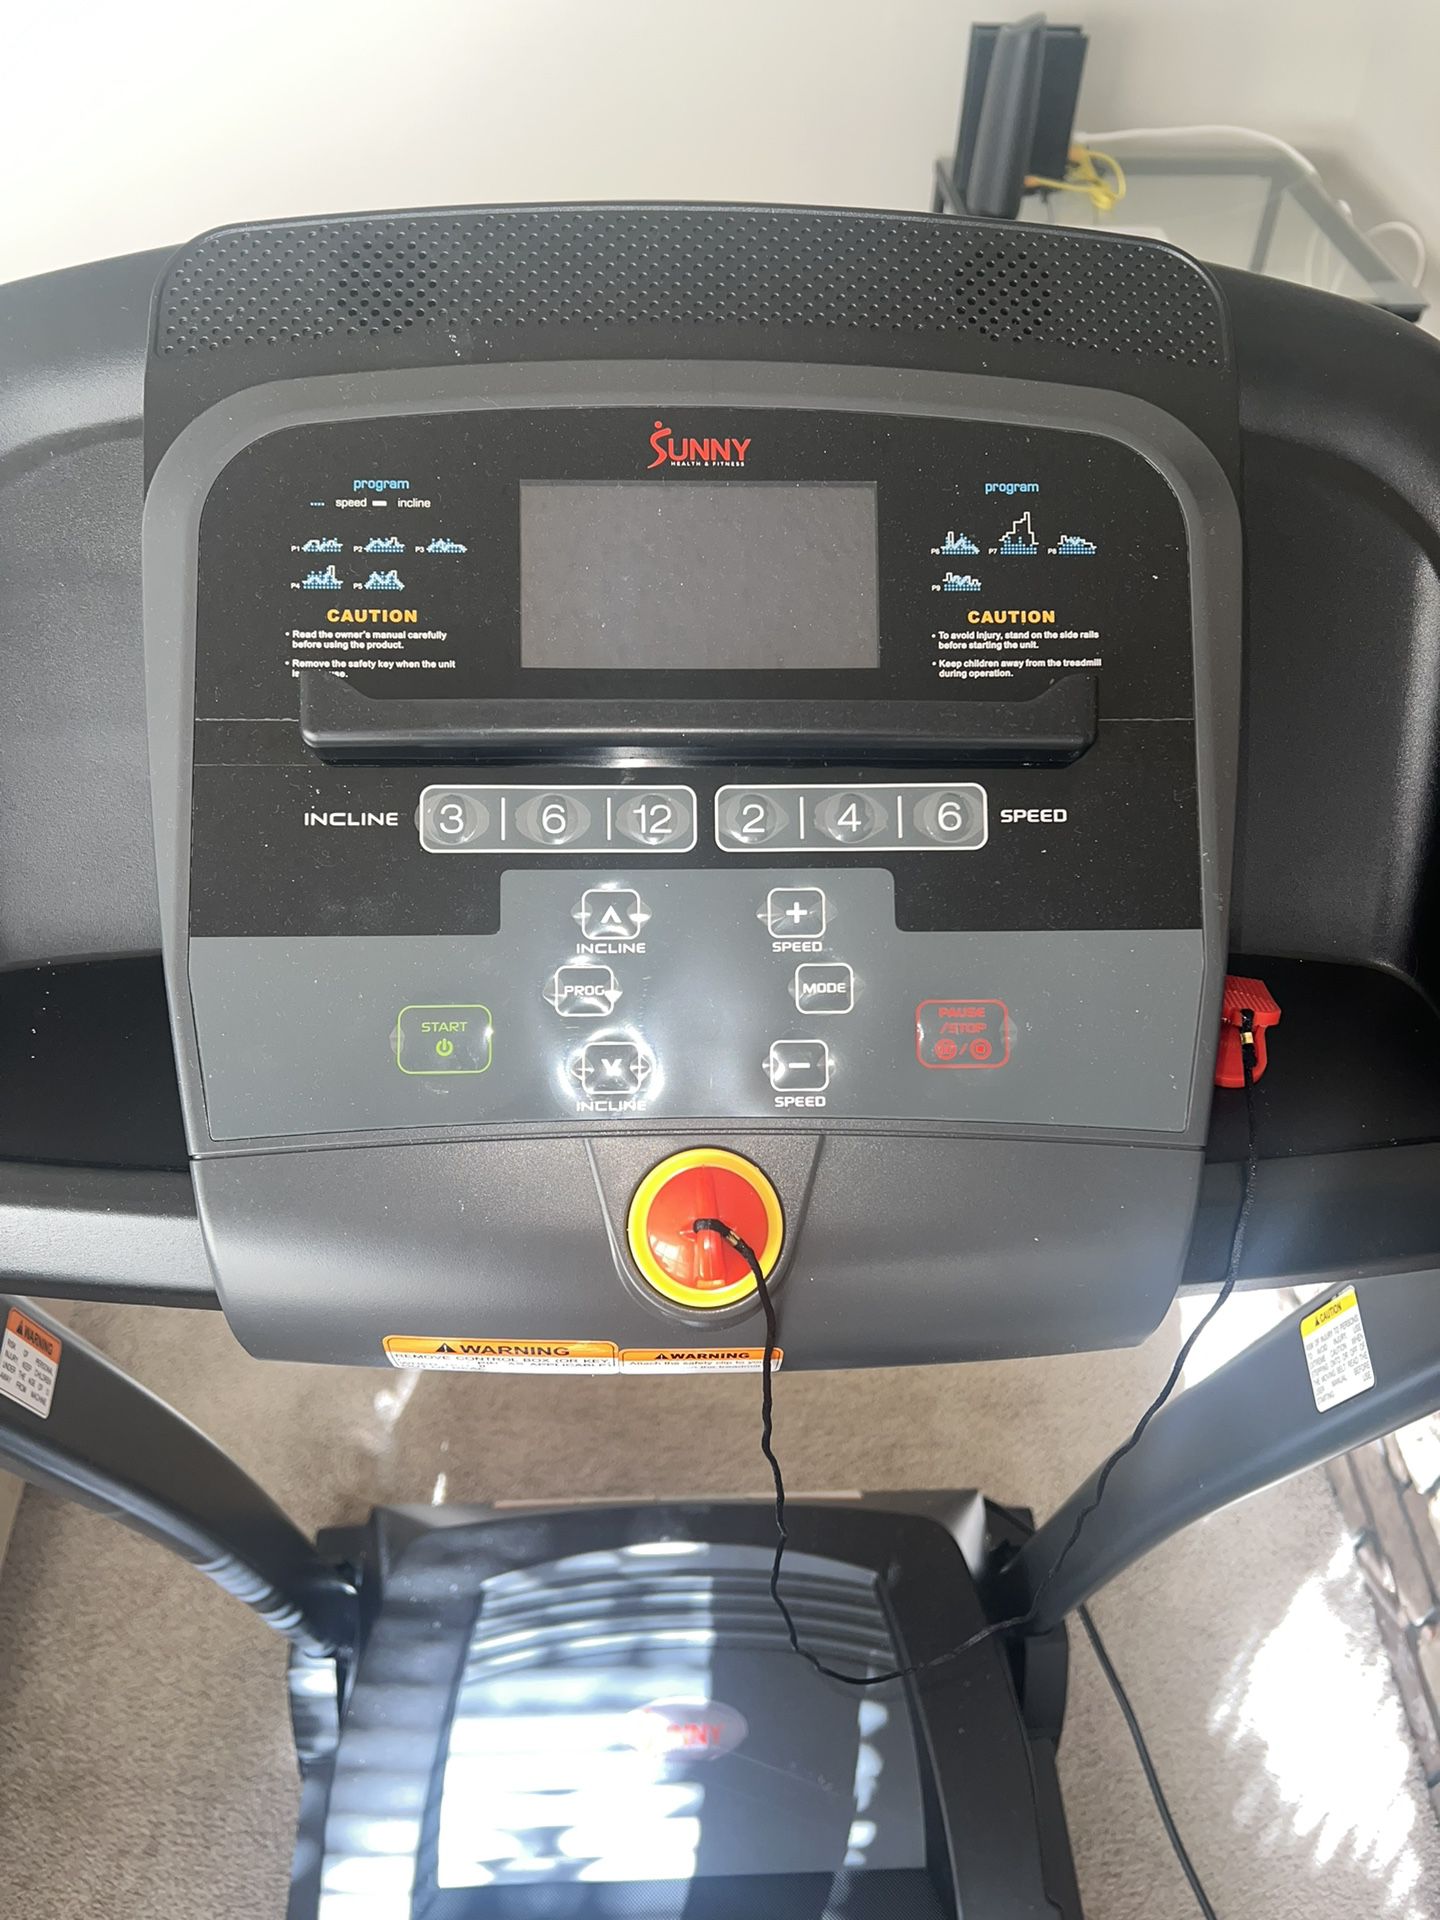 New Sunny Health and Fitness treadmill